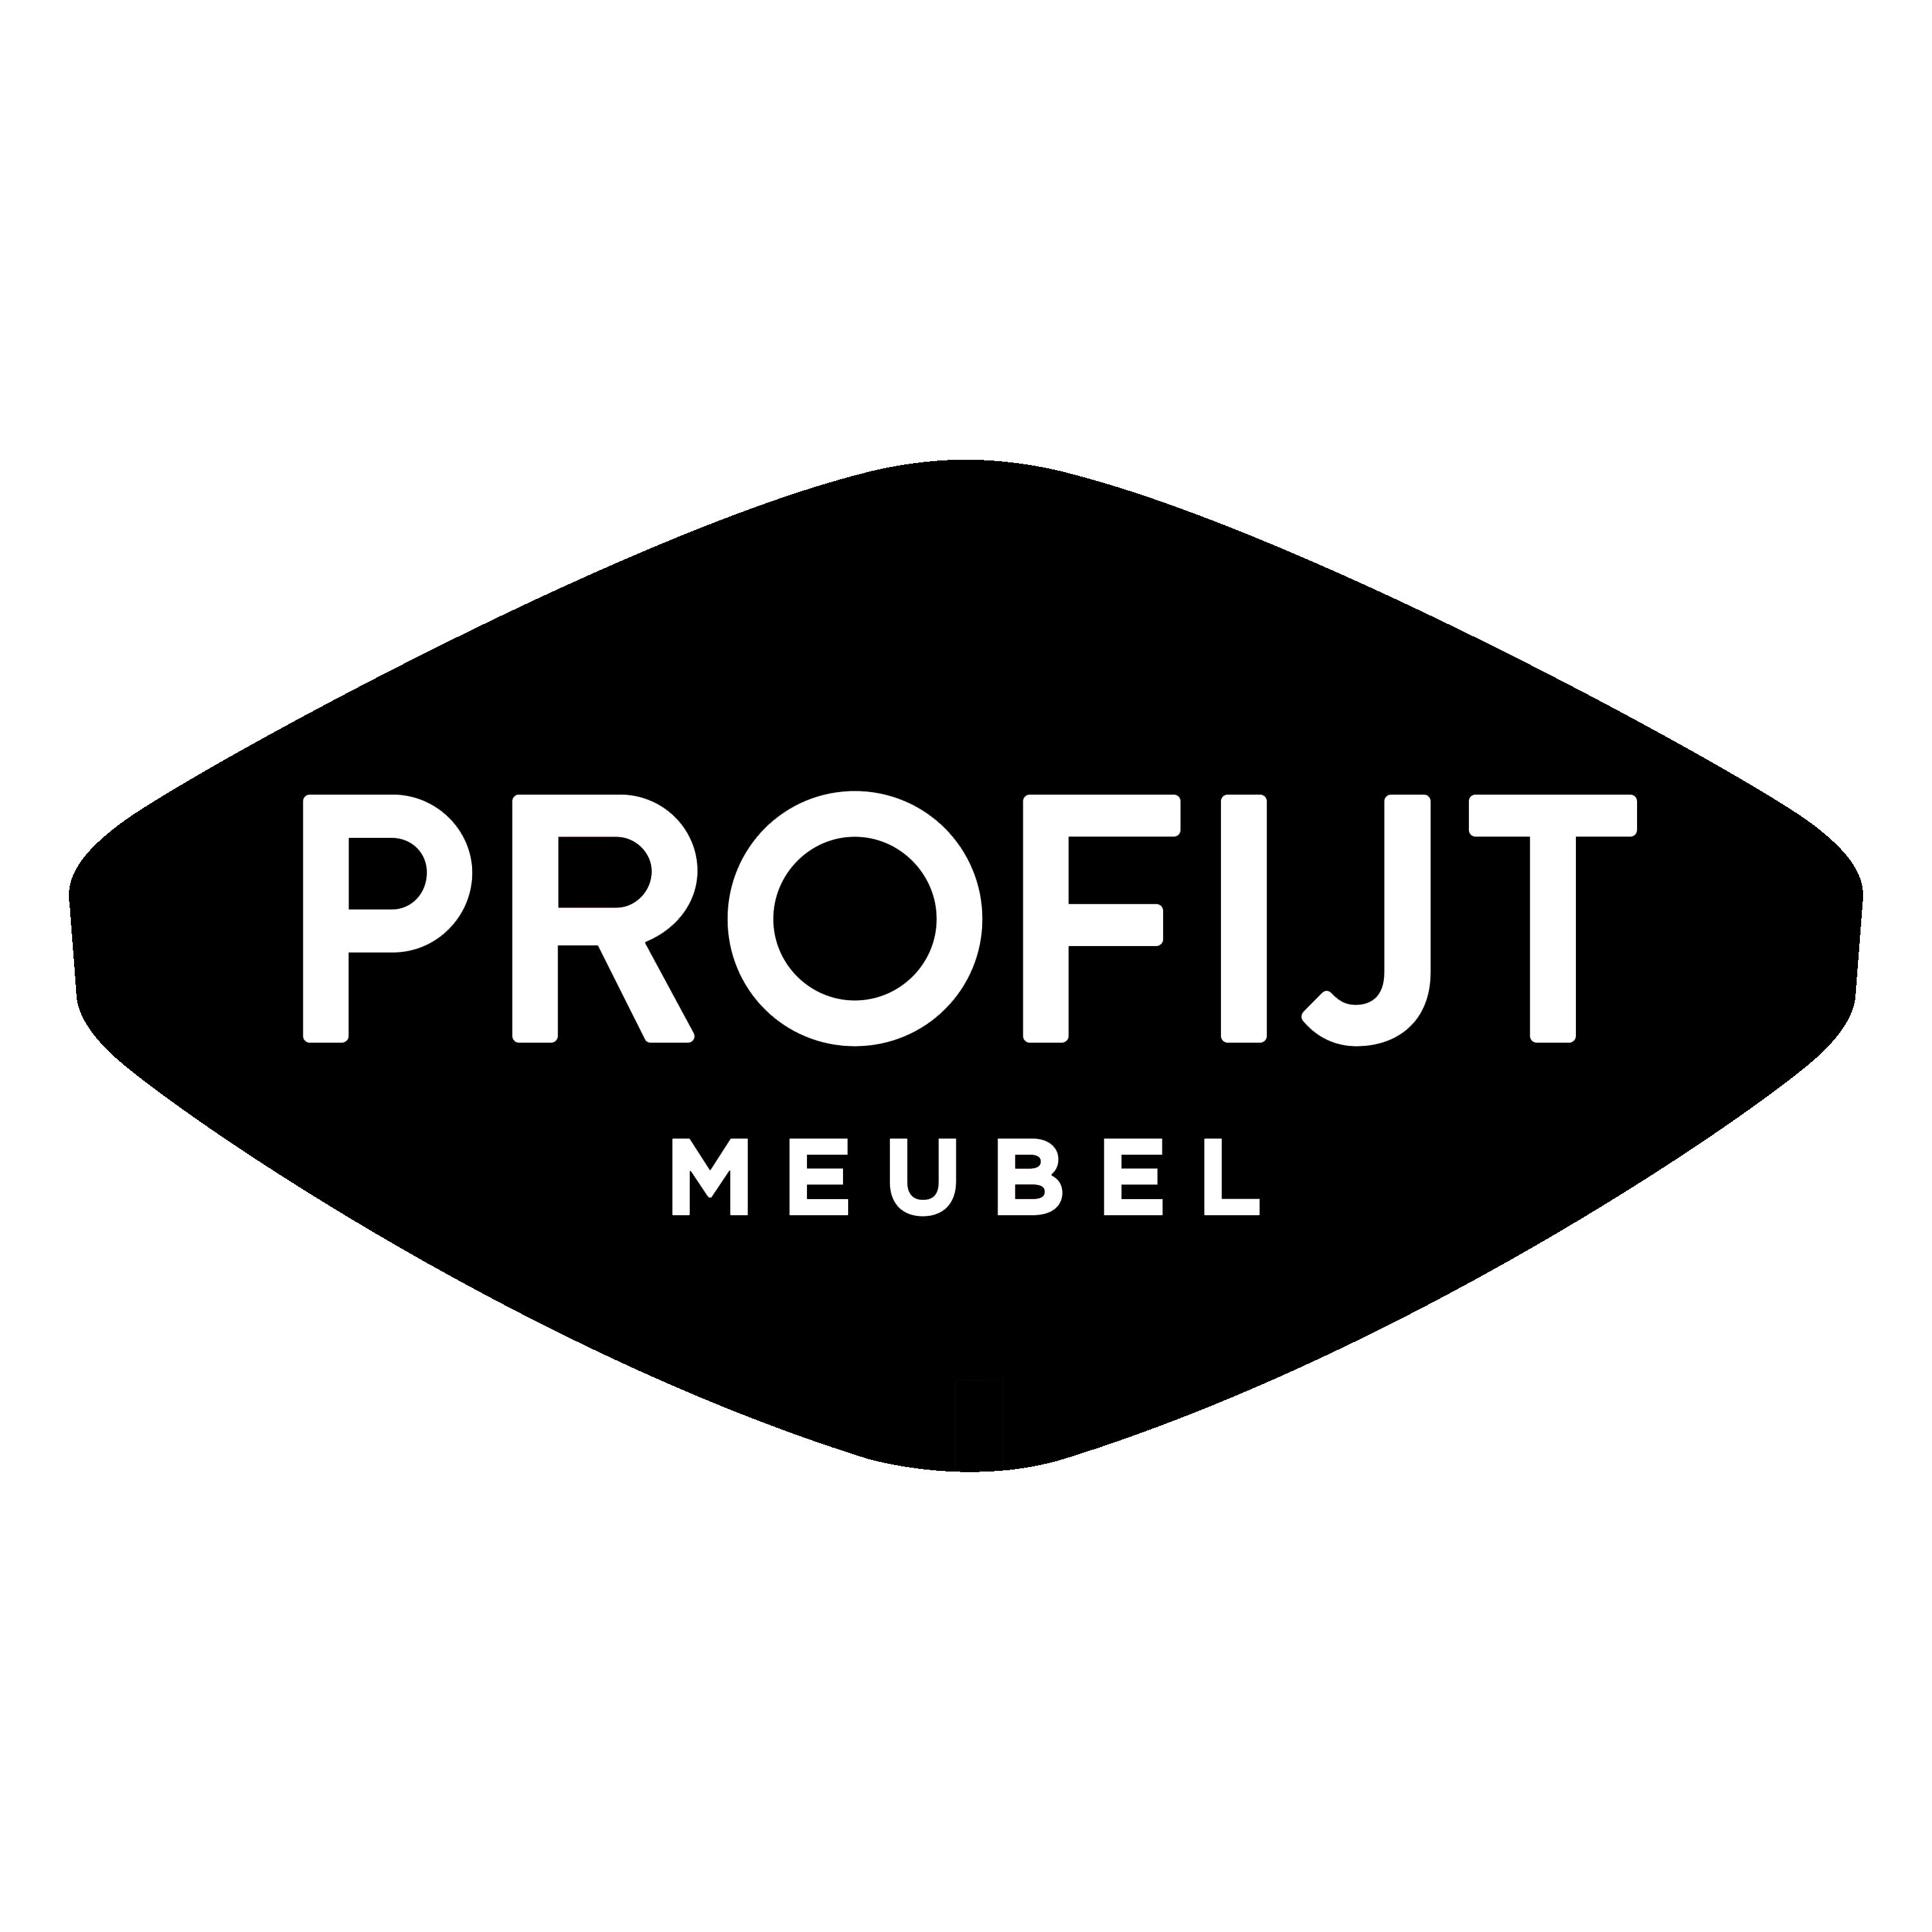 Profijt Meubel Logo  Transparent Photo